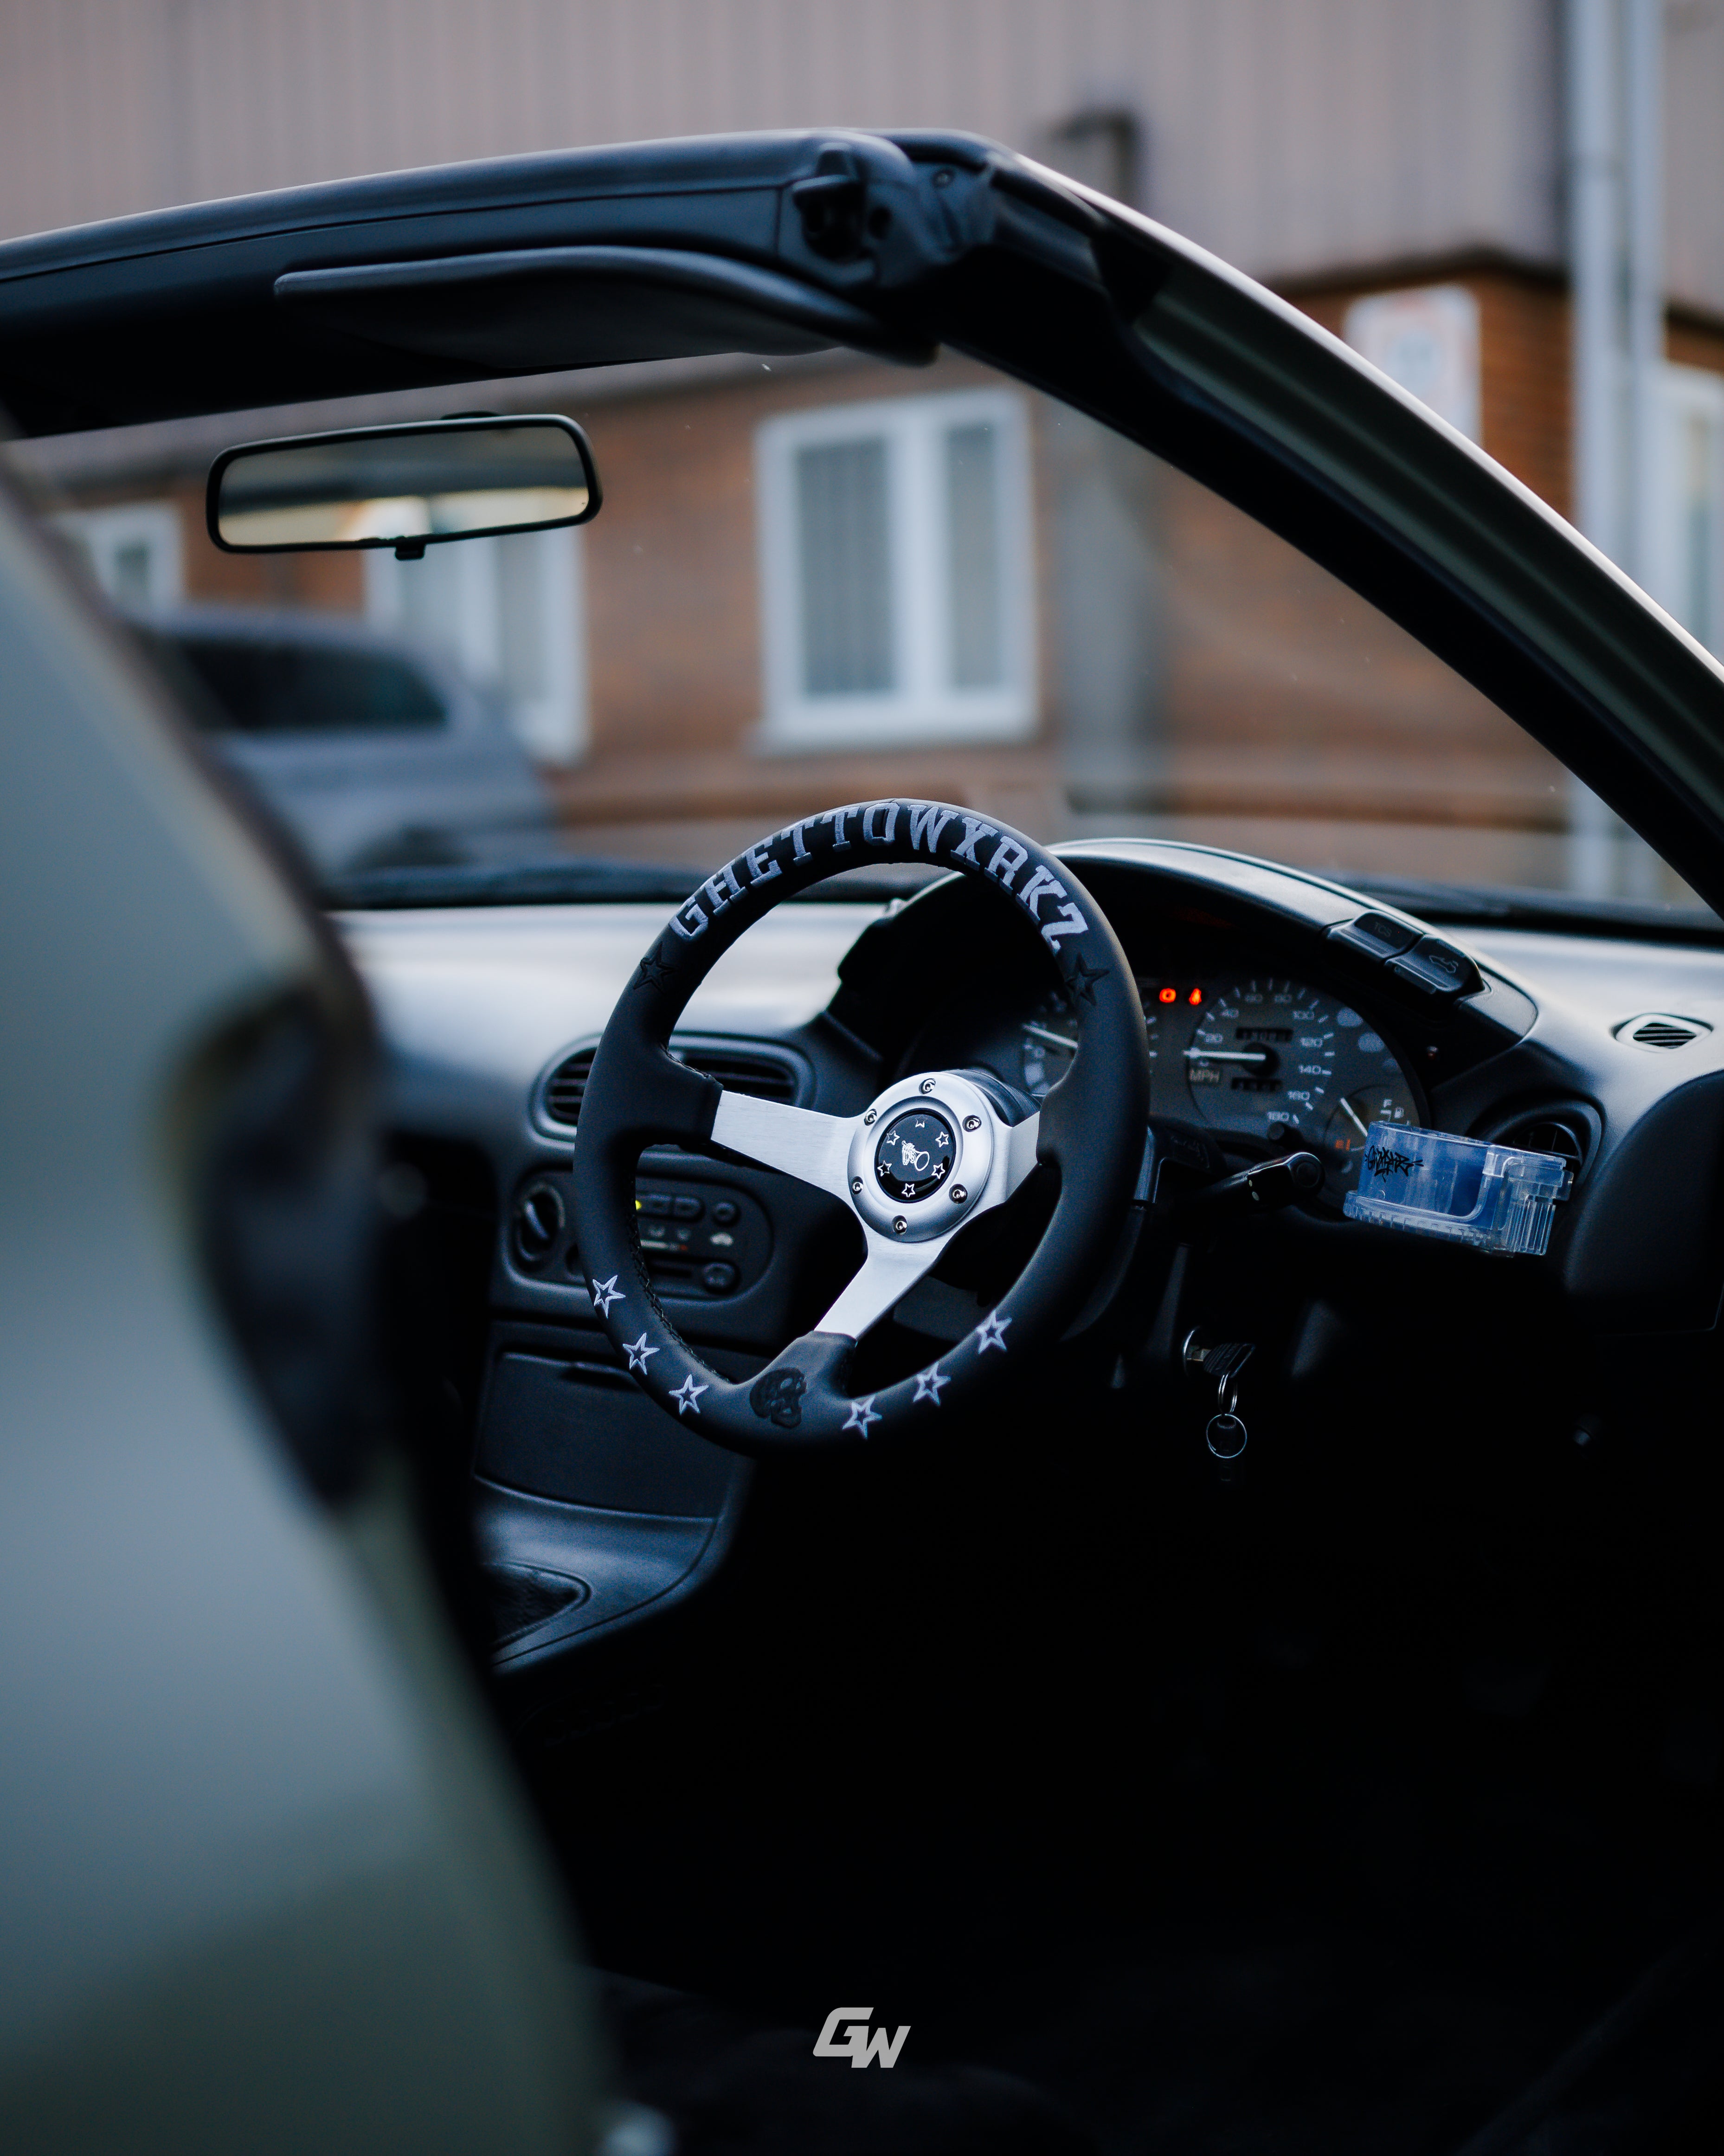 Ghettowxrkz steering wheel 320v1